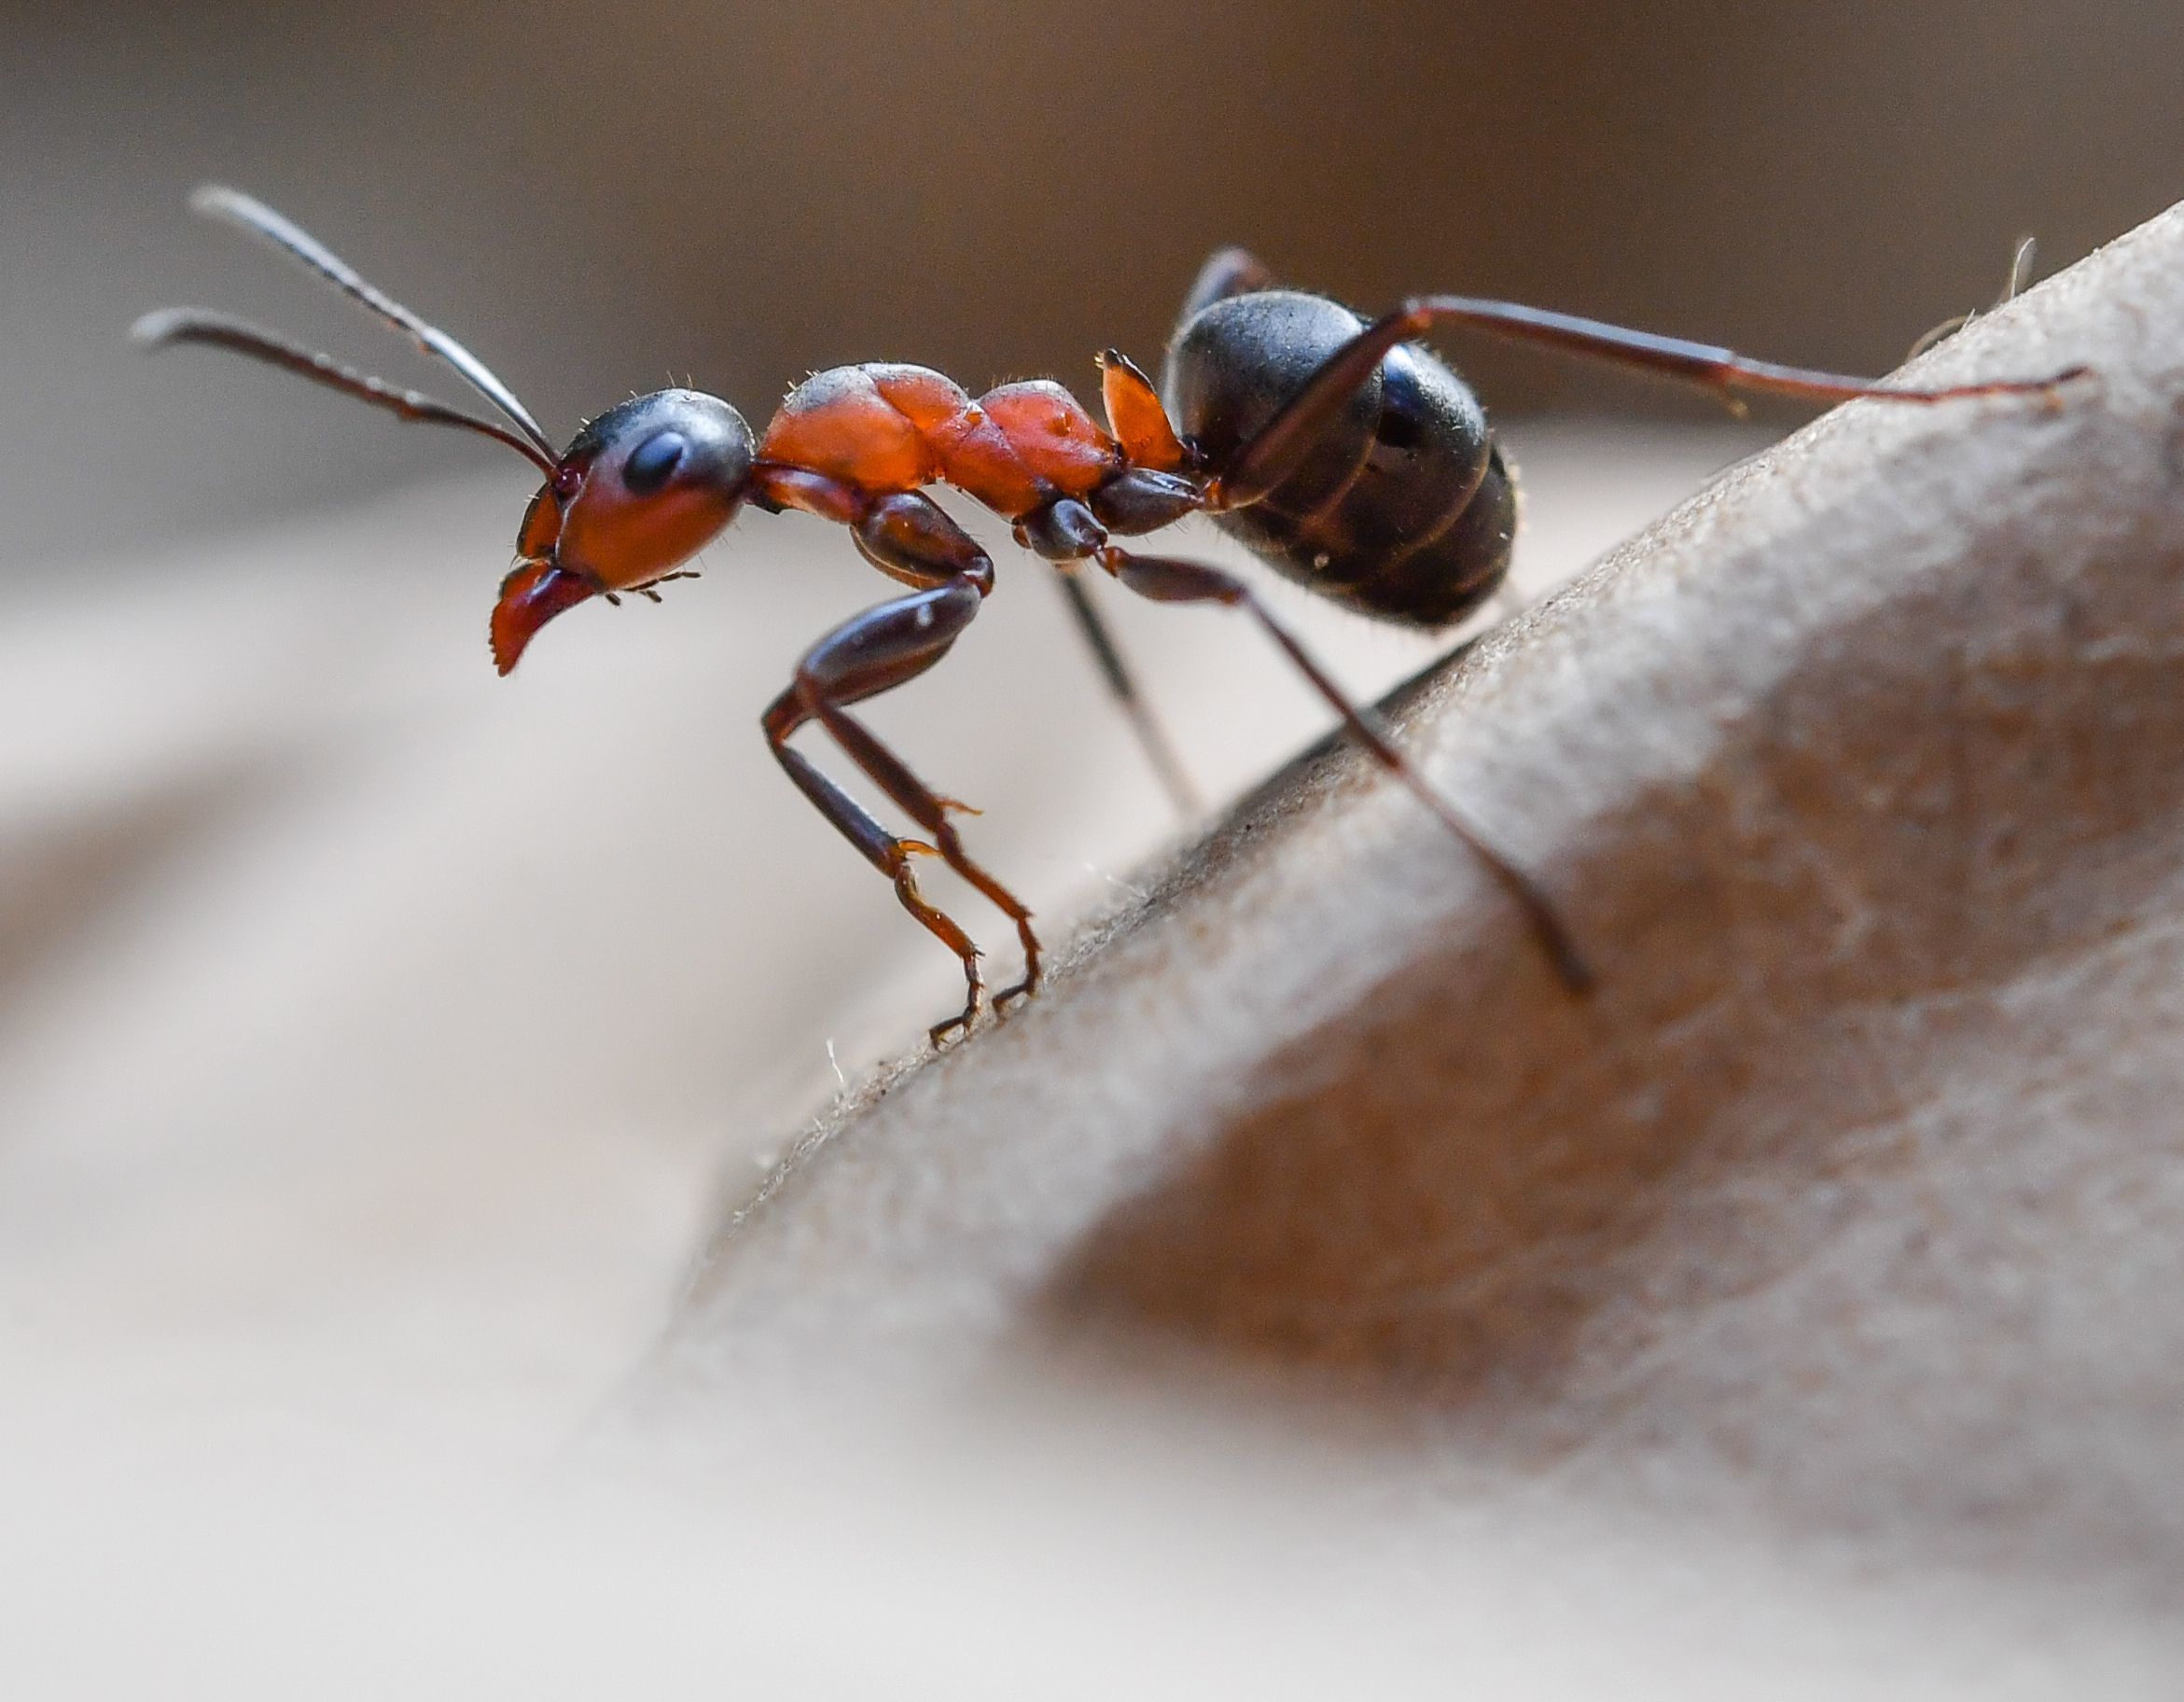 A European Wood Ant